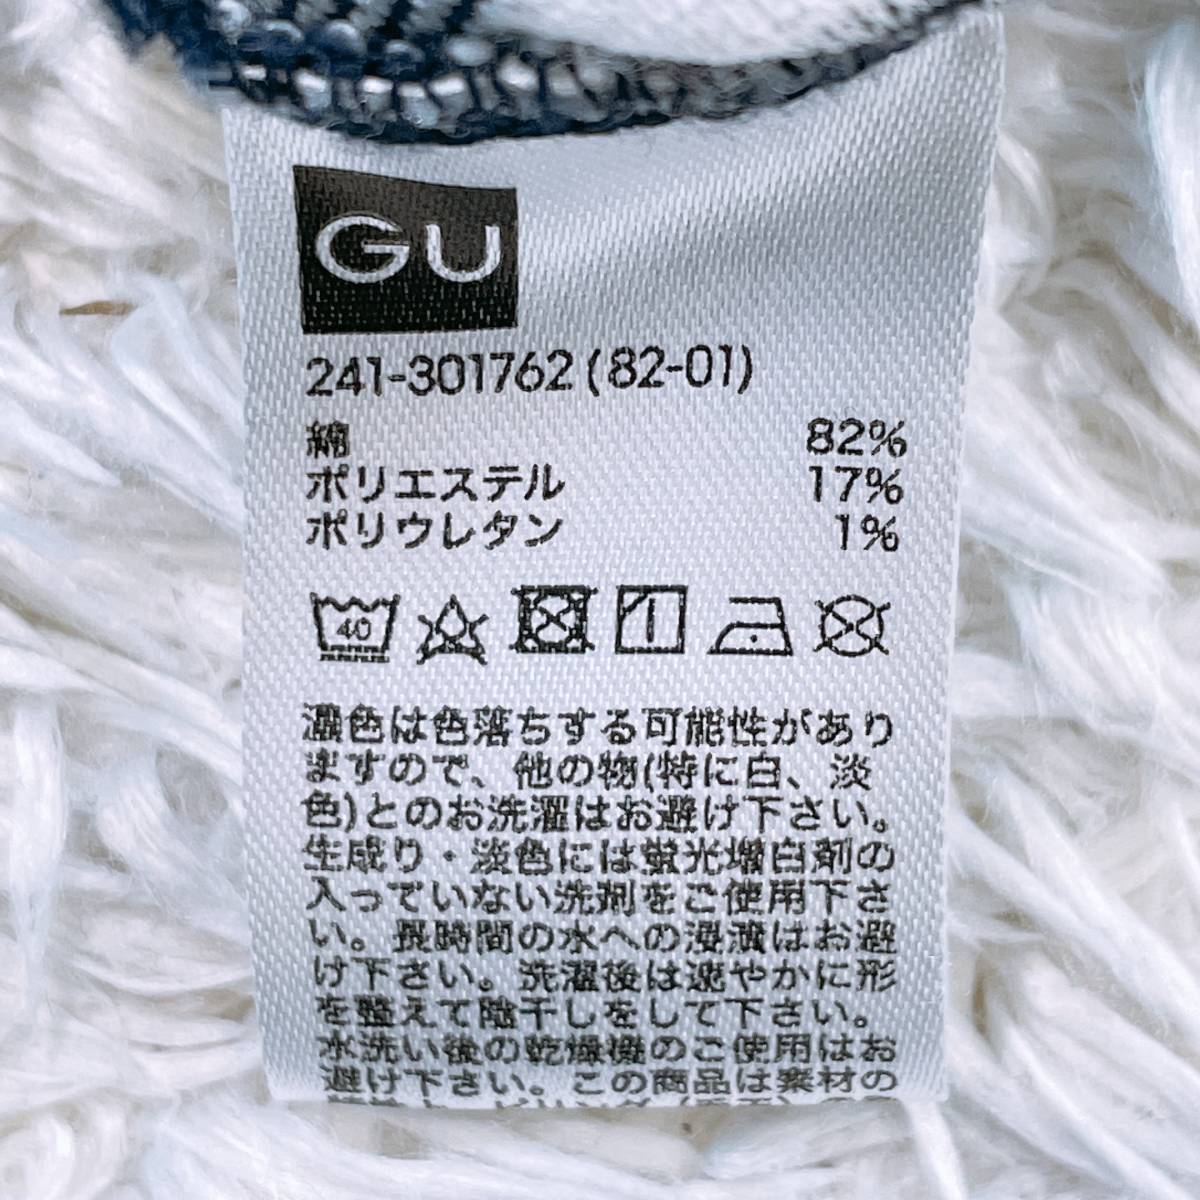 【22192】 良品 GU ジーユー Tシャツ ブルー 青 ホワイト 白 M 半袖 ボーダー デザインボタン かっこいい レディース 女性用